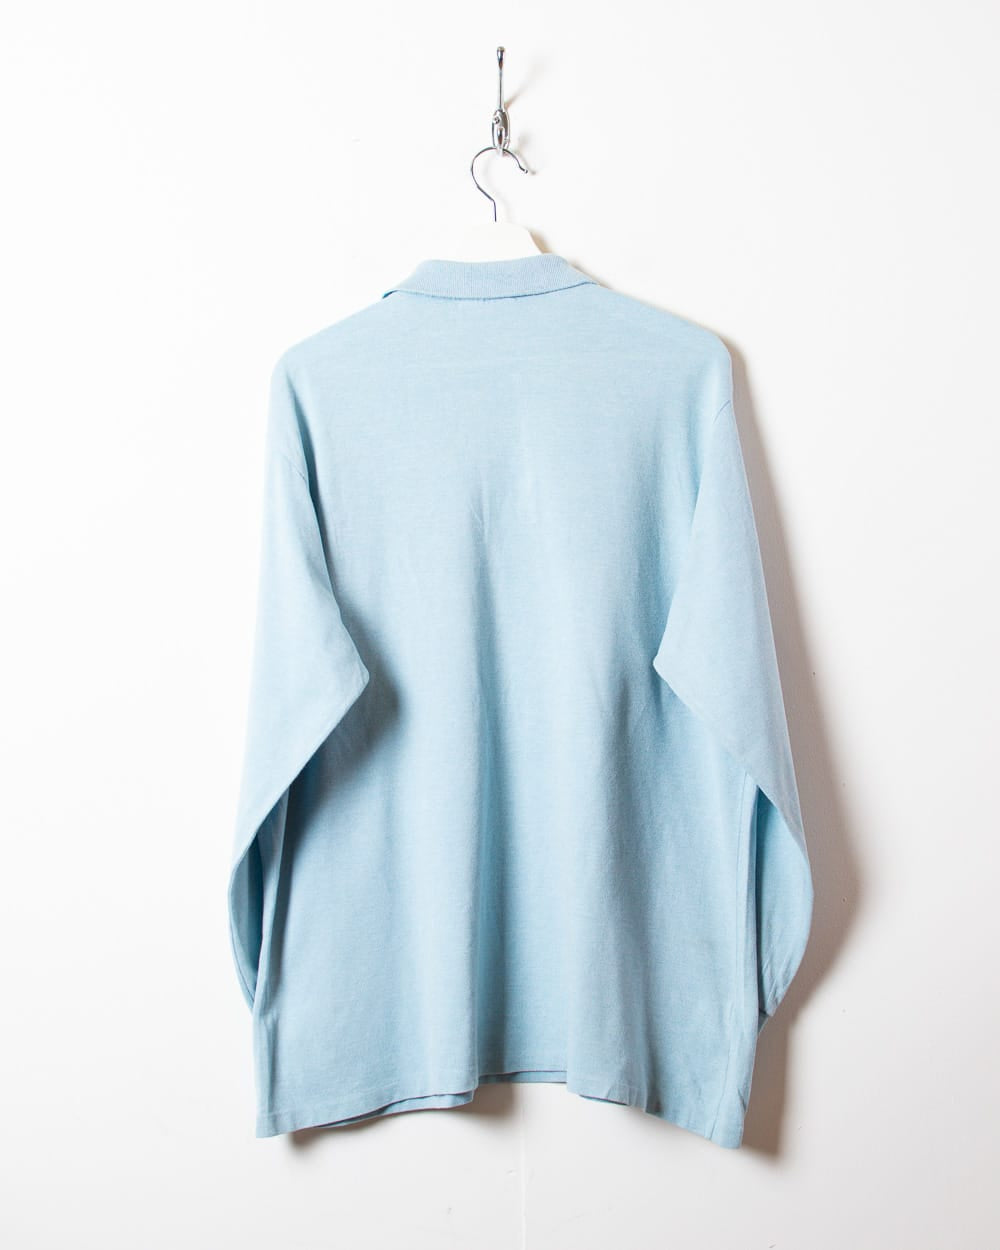 BabyBlue Chemise Lacoste Long Sleeved Polo Shirt - X-Large